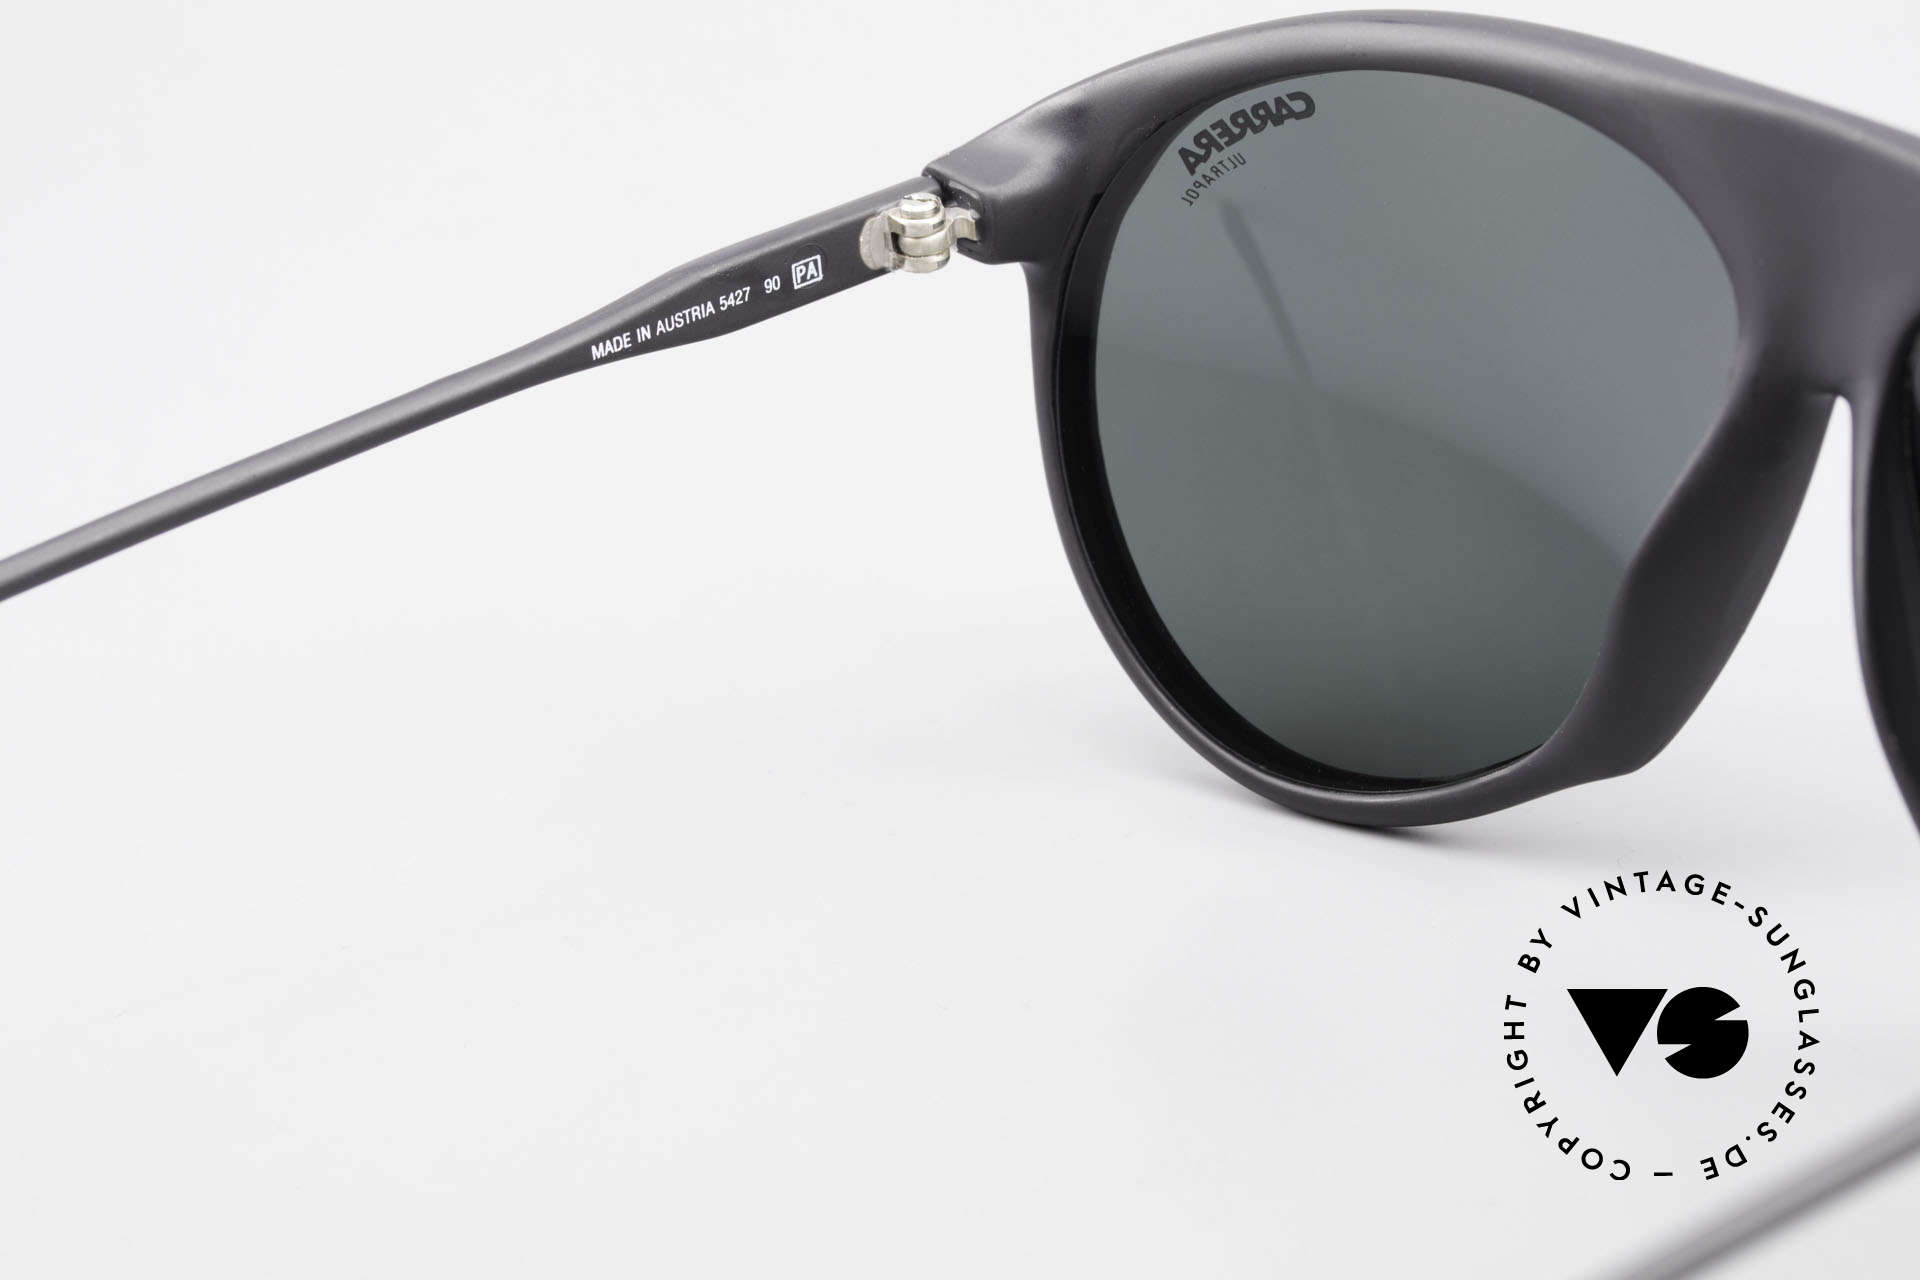 Carrera 5427 80er Sportbrille Polarisierend, KEINE Retrosonnenbrille, 100% vintage ORIGINAL, Passend für Herren und Damen